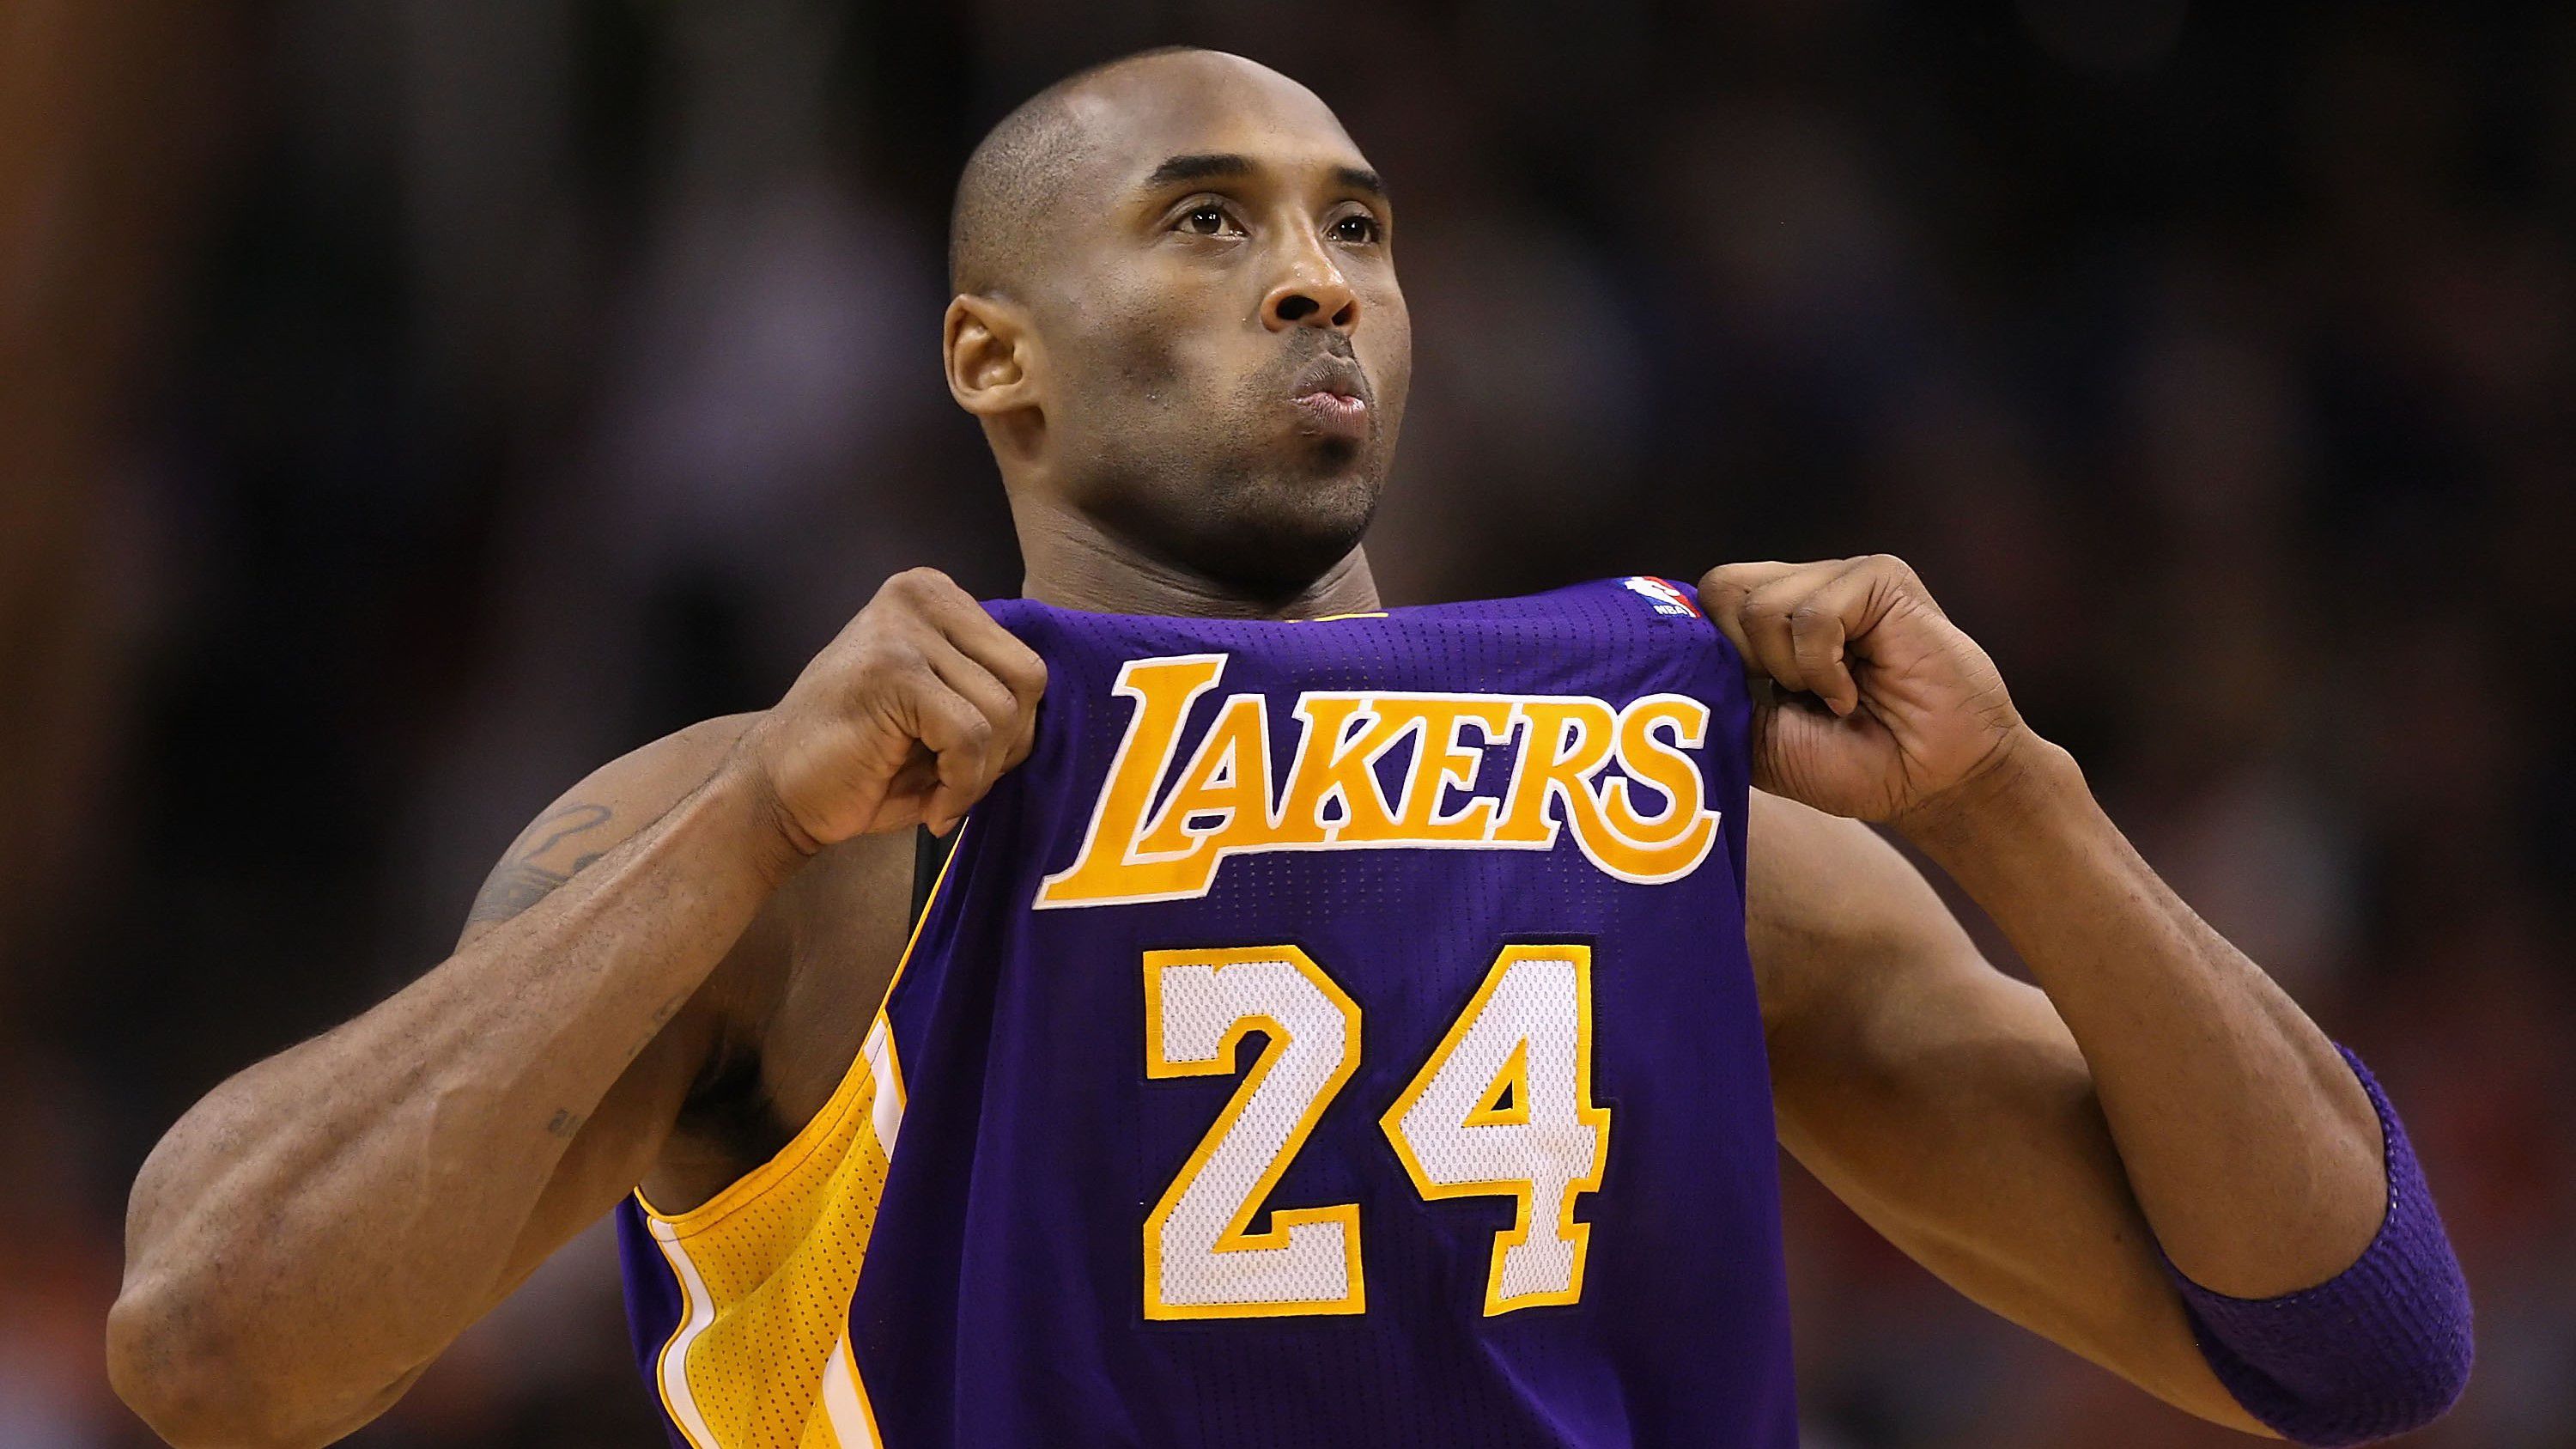 A 2020-ban elhunyt Kobe Bryant húsz évig játszott a Lakersben